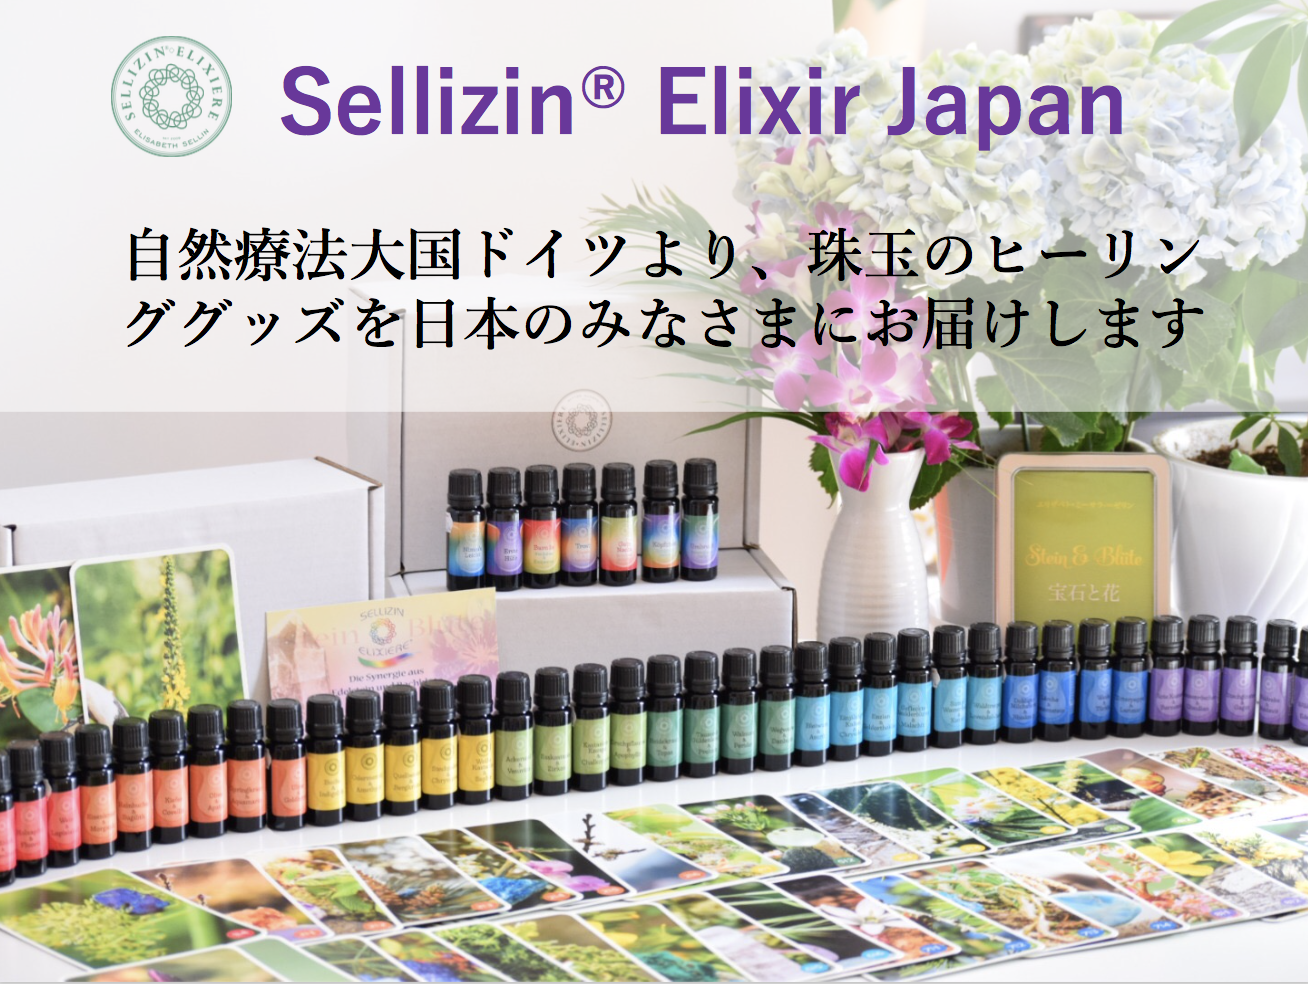 ベーシックセミナー | Sellizin® Elixir Japan（ゼリツィン®エリクサージャパン公式サイト）